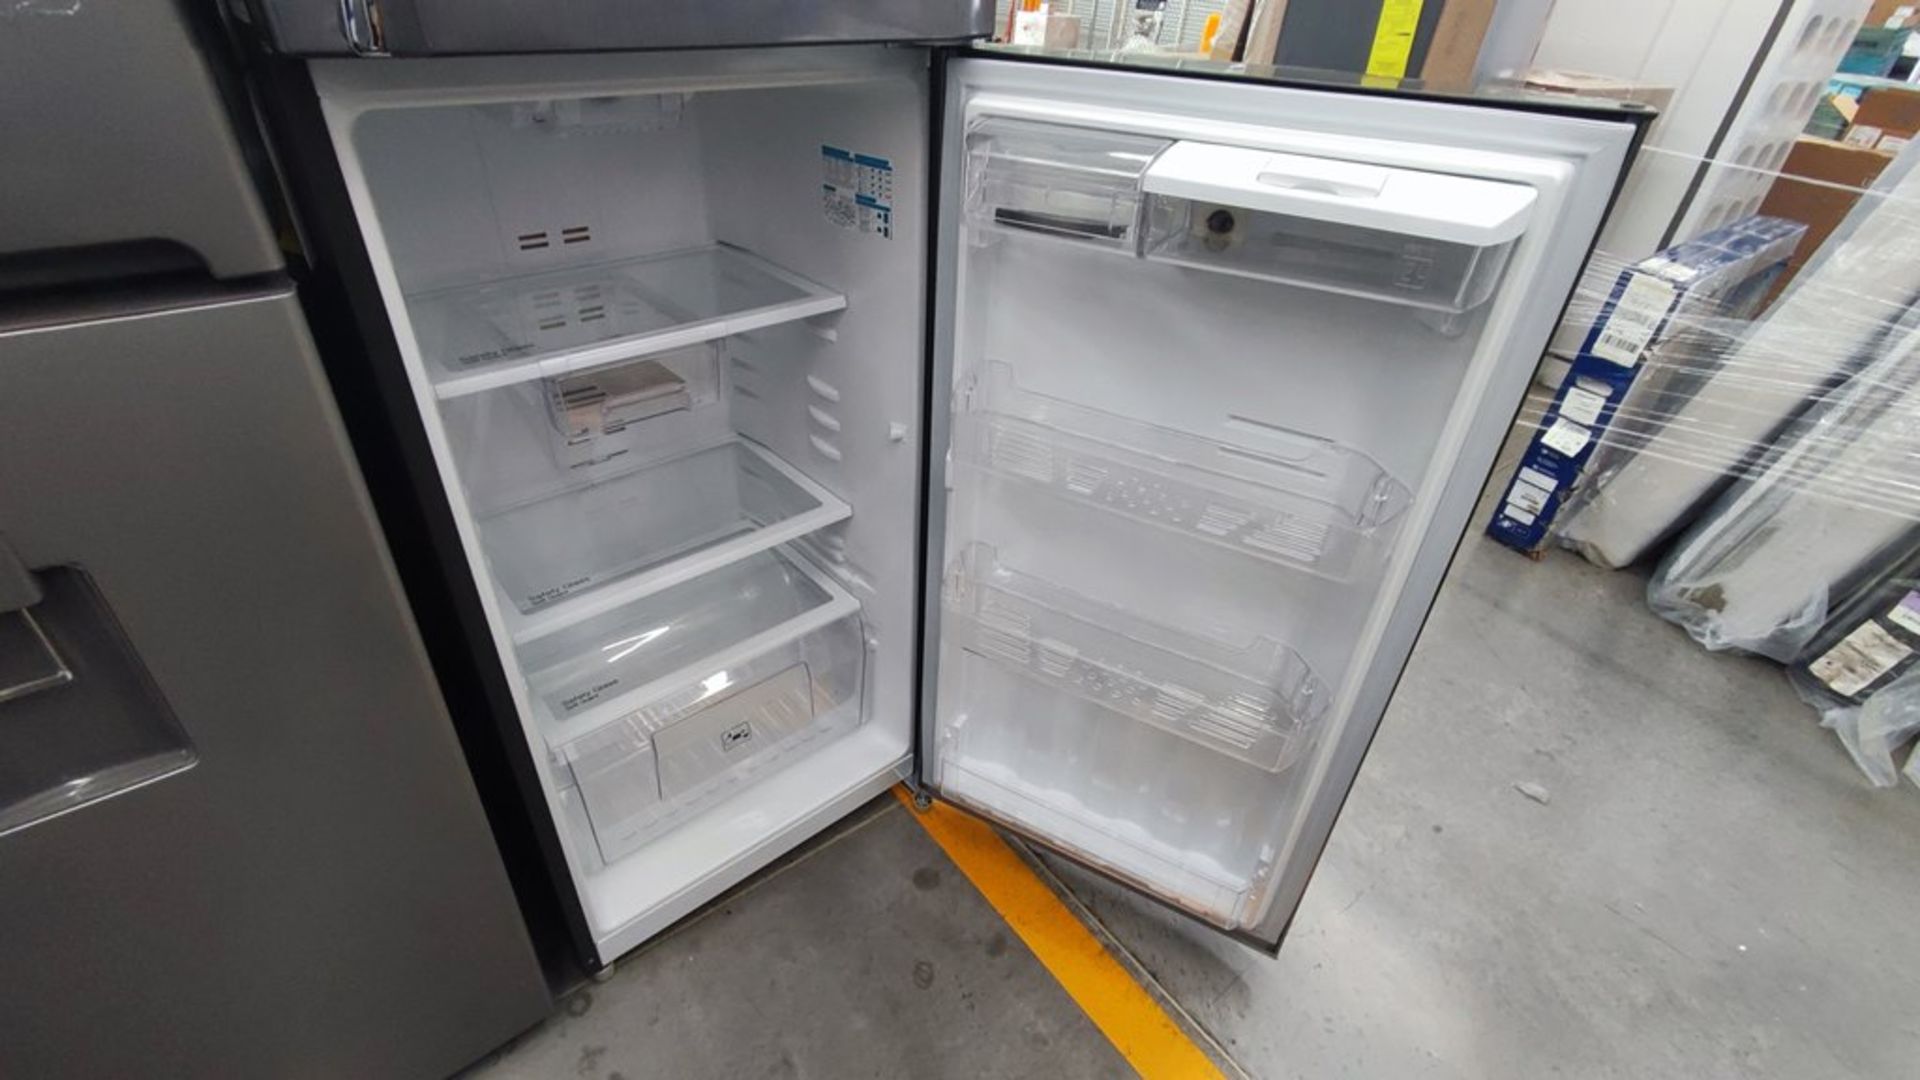 Lote de 2 refrigeradores contiene: 1 Refrigerador Marca Mabe, Modelo RMT400RY, No de serie 2202B401 - Image 10 of 15